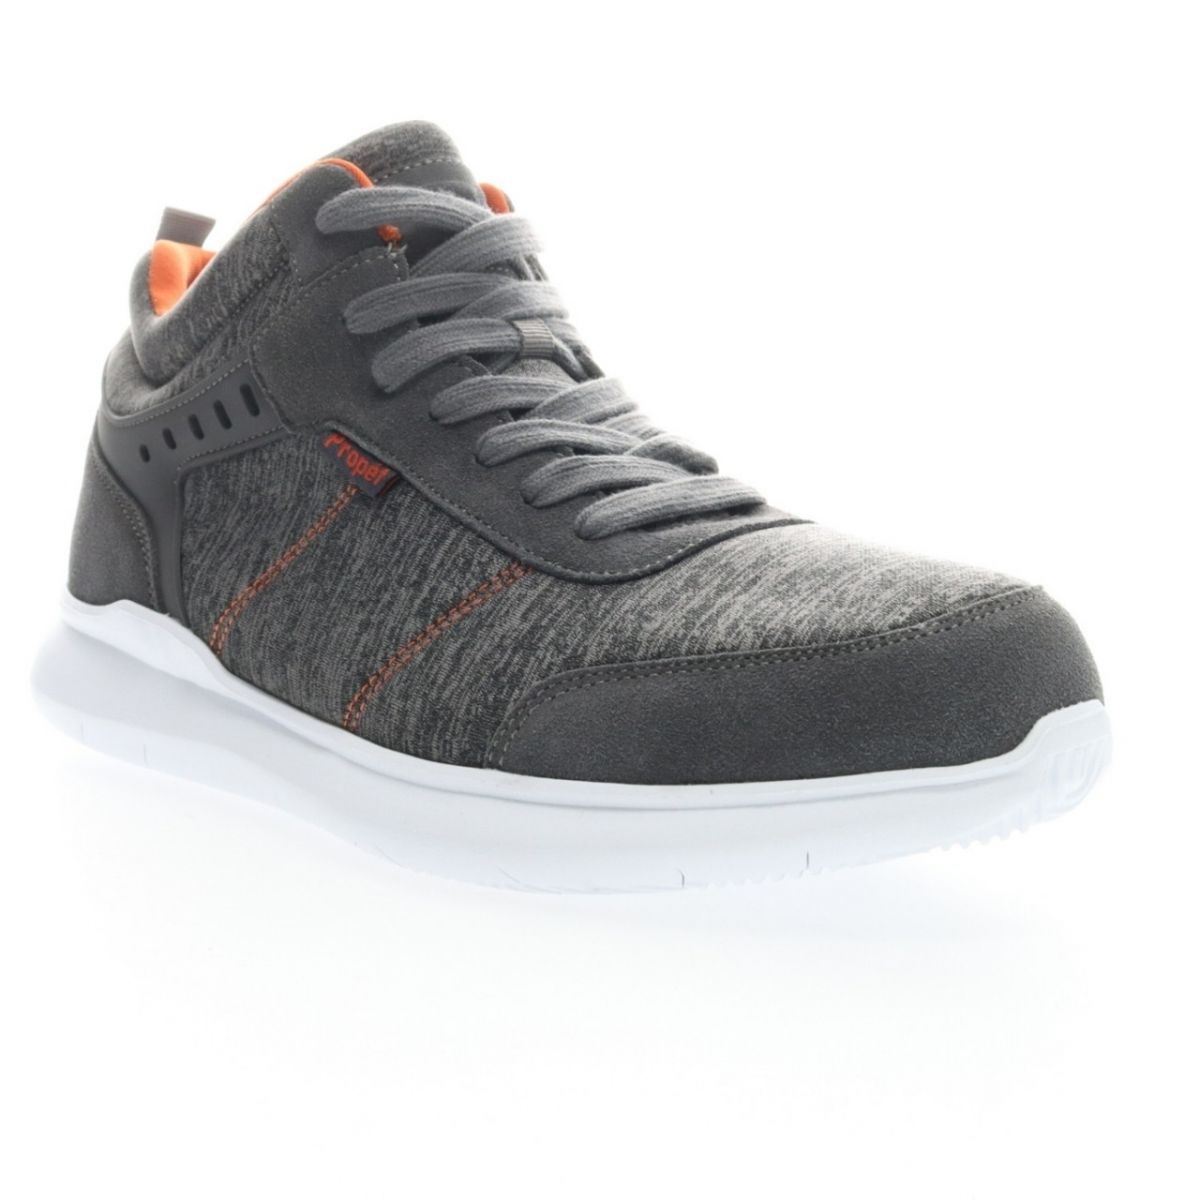 Propet Men's Viator Hi Sneaker Grey/Orange - MAA112MGOR Grey/orange - Grey/orange, 15 X-Wide